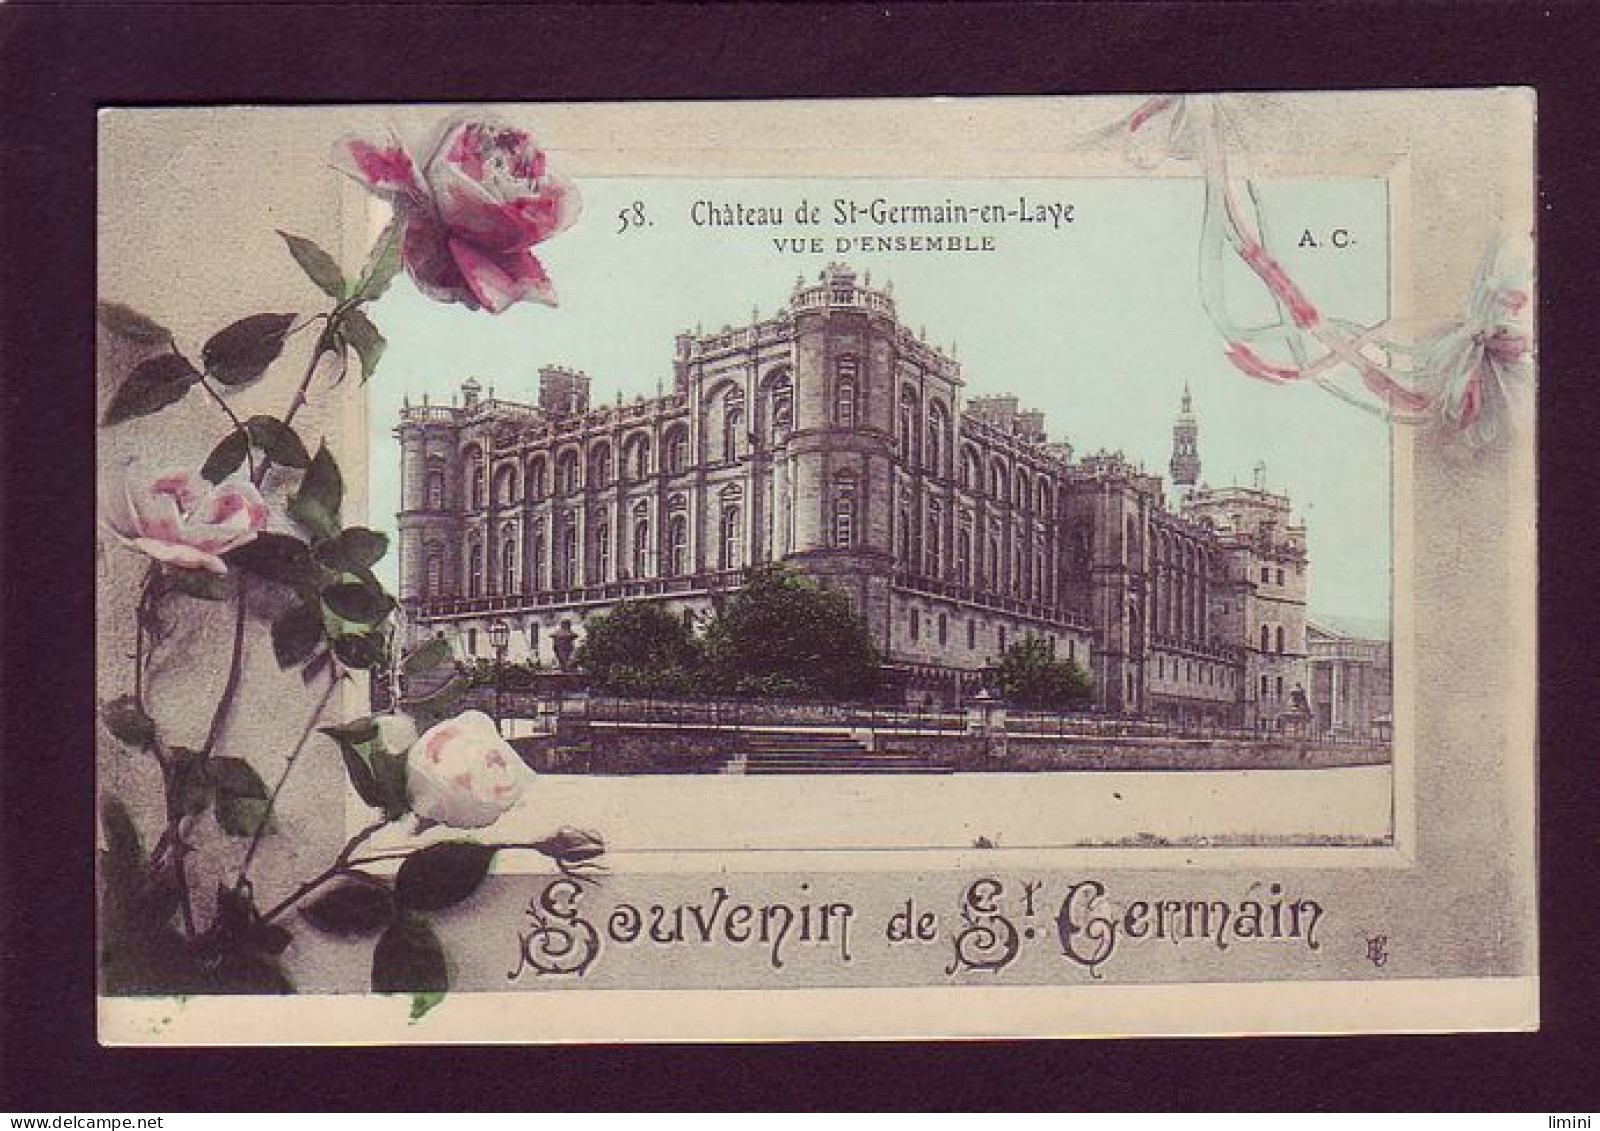 78 - SAINT-GERMAIN-en-LAYE - FLEURS - CARTE ILLUSTRÉE - SOUVENIR -  - St. Germain En Laye (Kasteel)